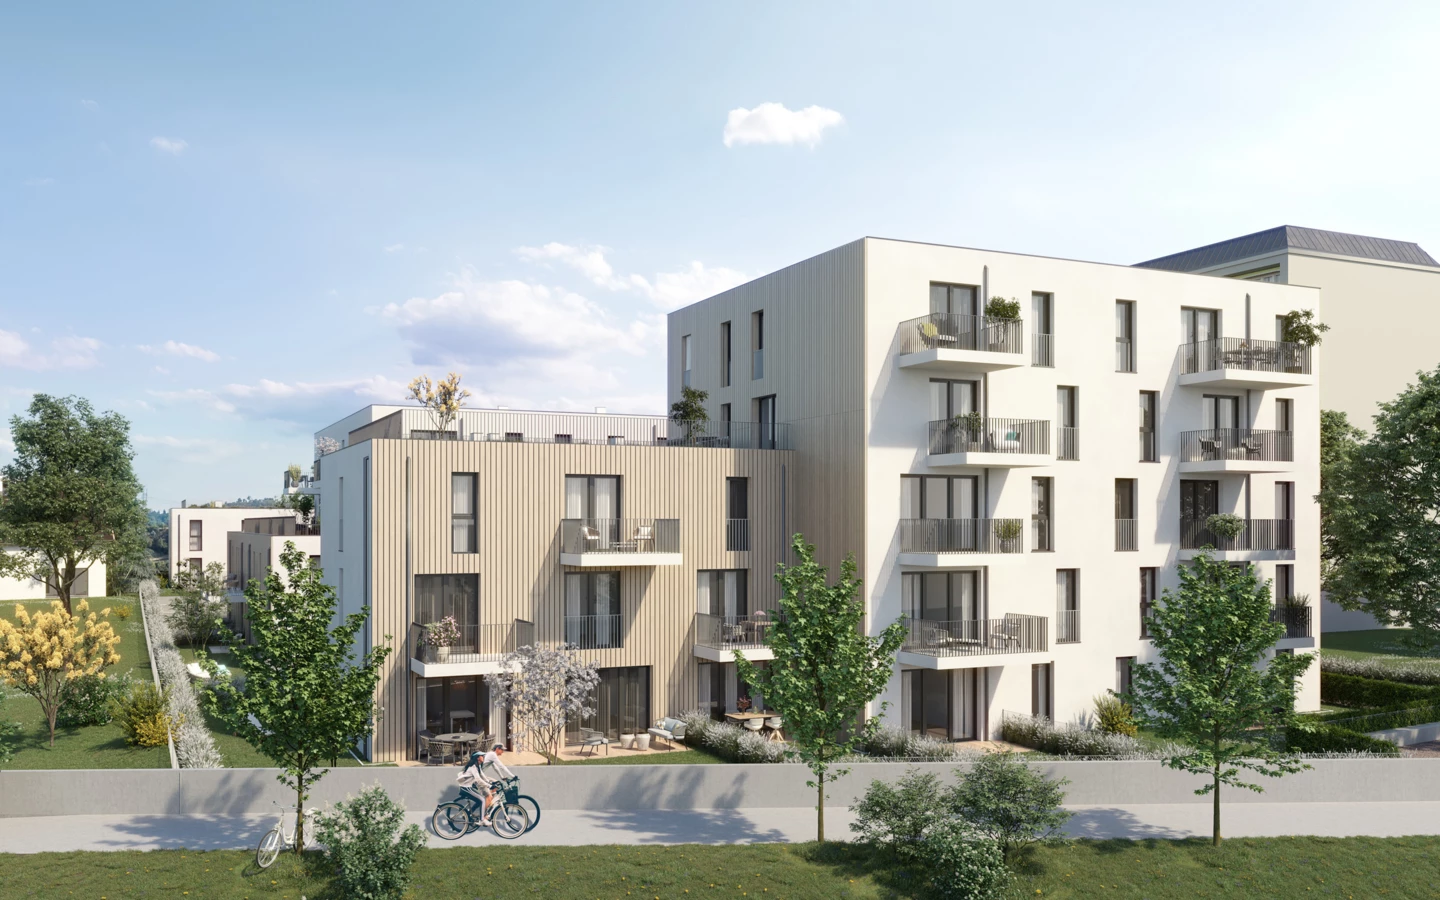 Architektonischer "Hingucker": Der Wechsel aus Wärmeschutz- und hinterlüfteter Holzfassade sorgt für Abwechslung und ein natürliches Wohnklima.